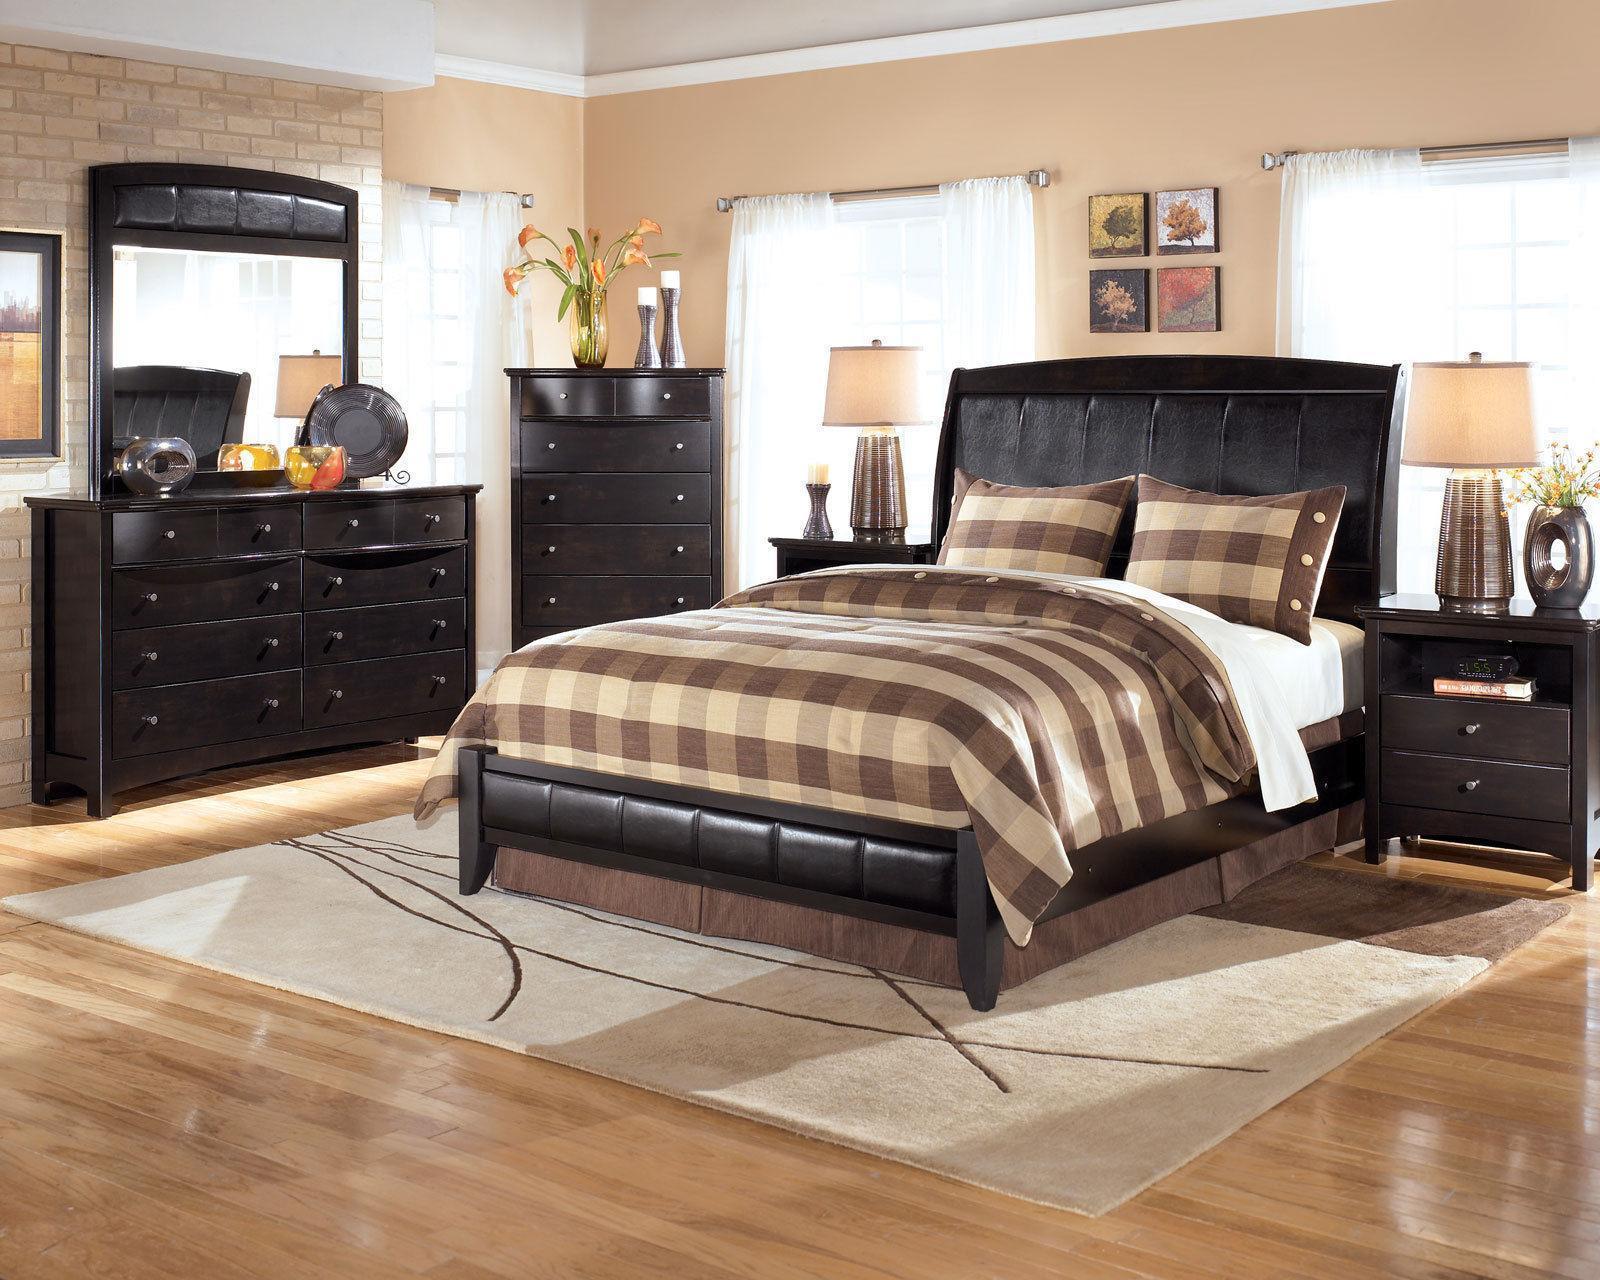 CELINE 5 pieces Black Bedroom Set Furniture w/ King Size ...